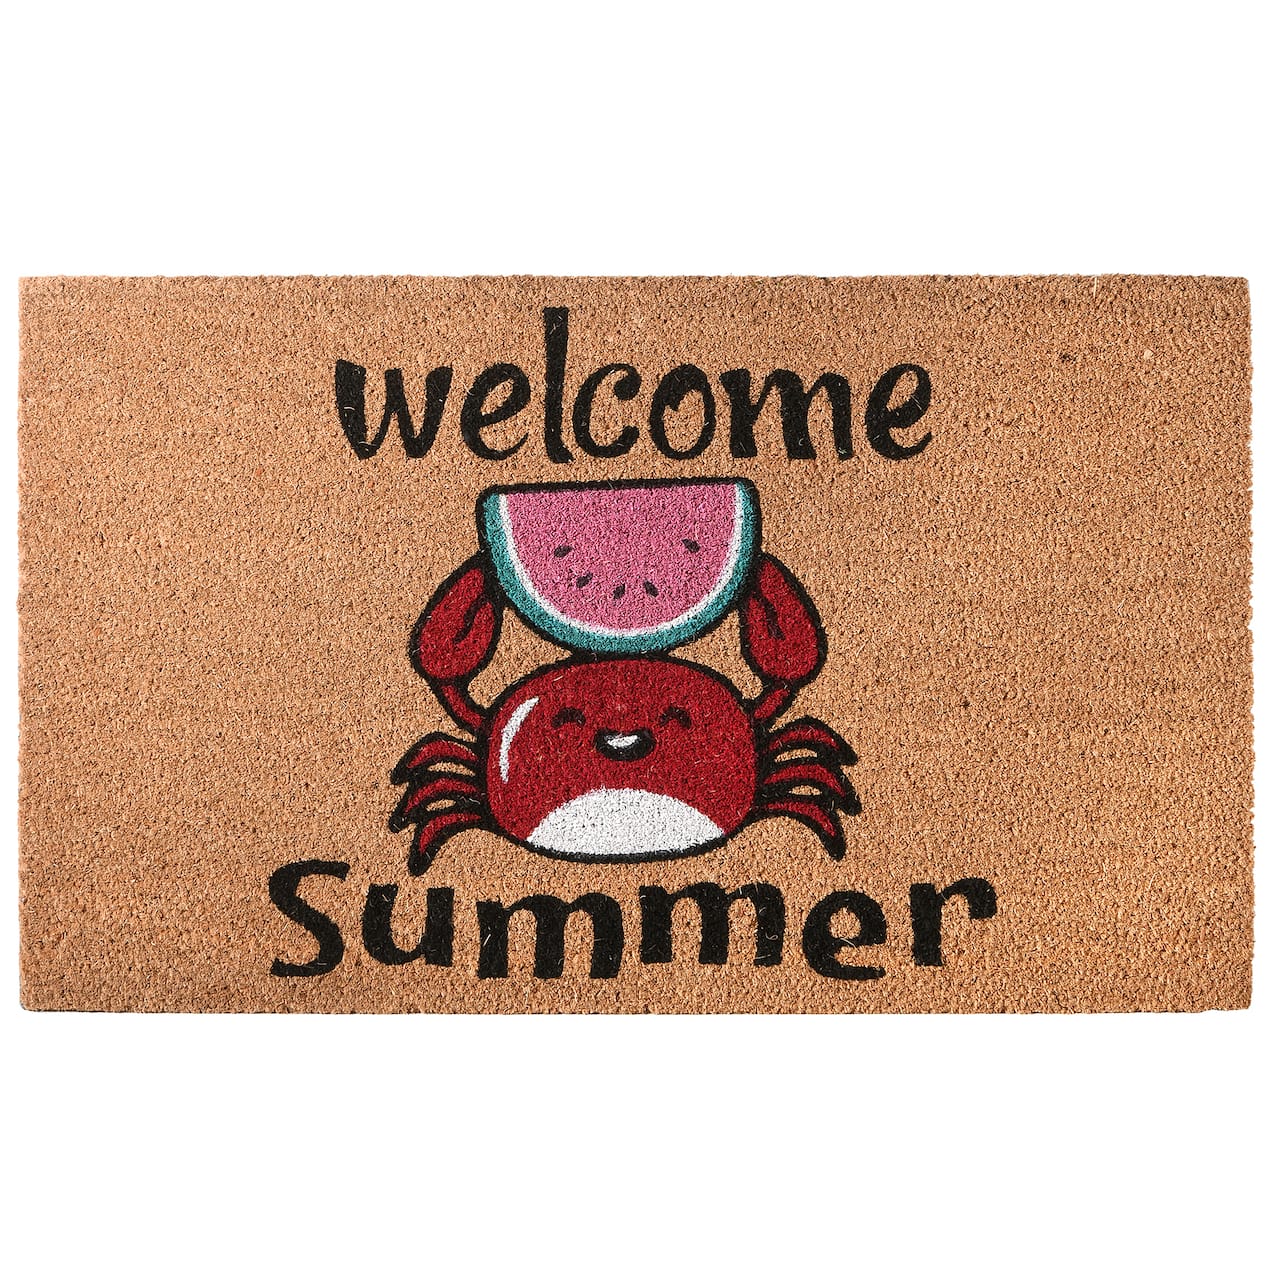 Welcome Summer Crab Coir Doormat